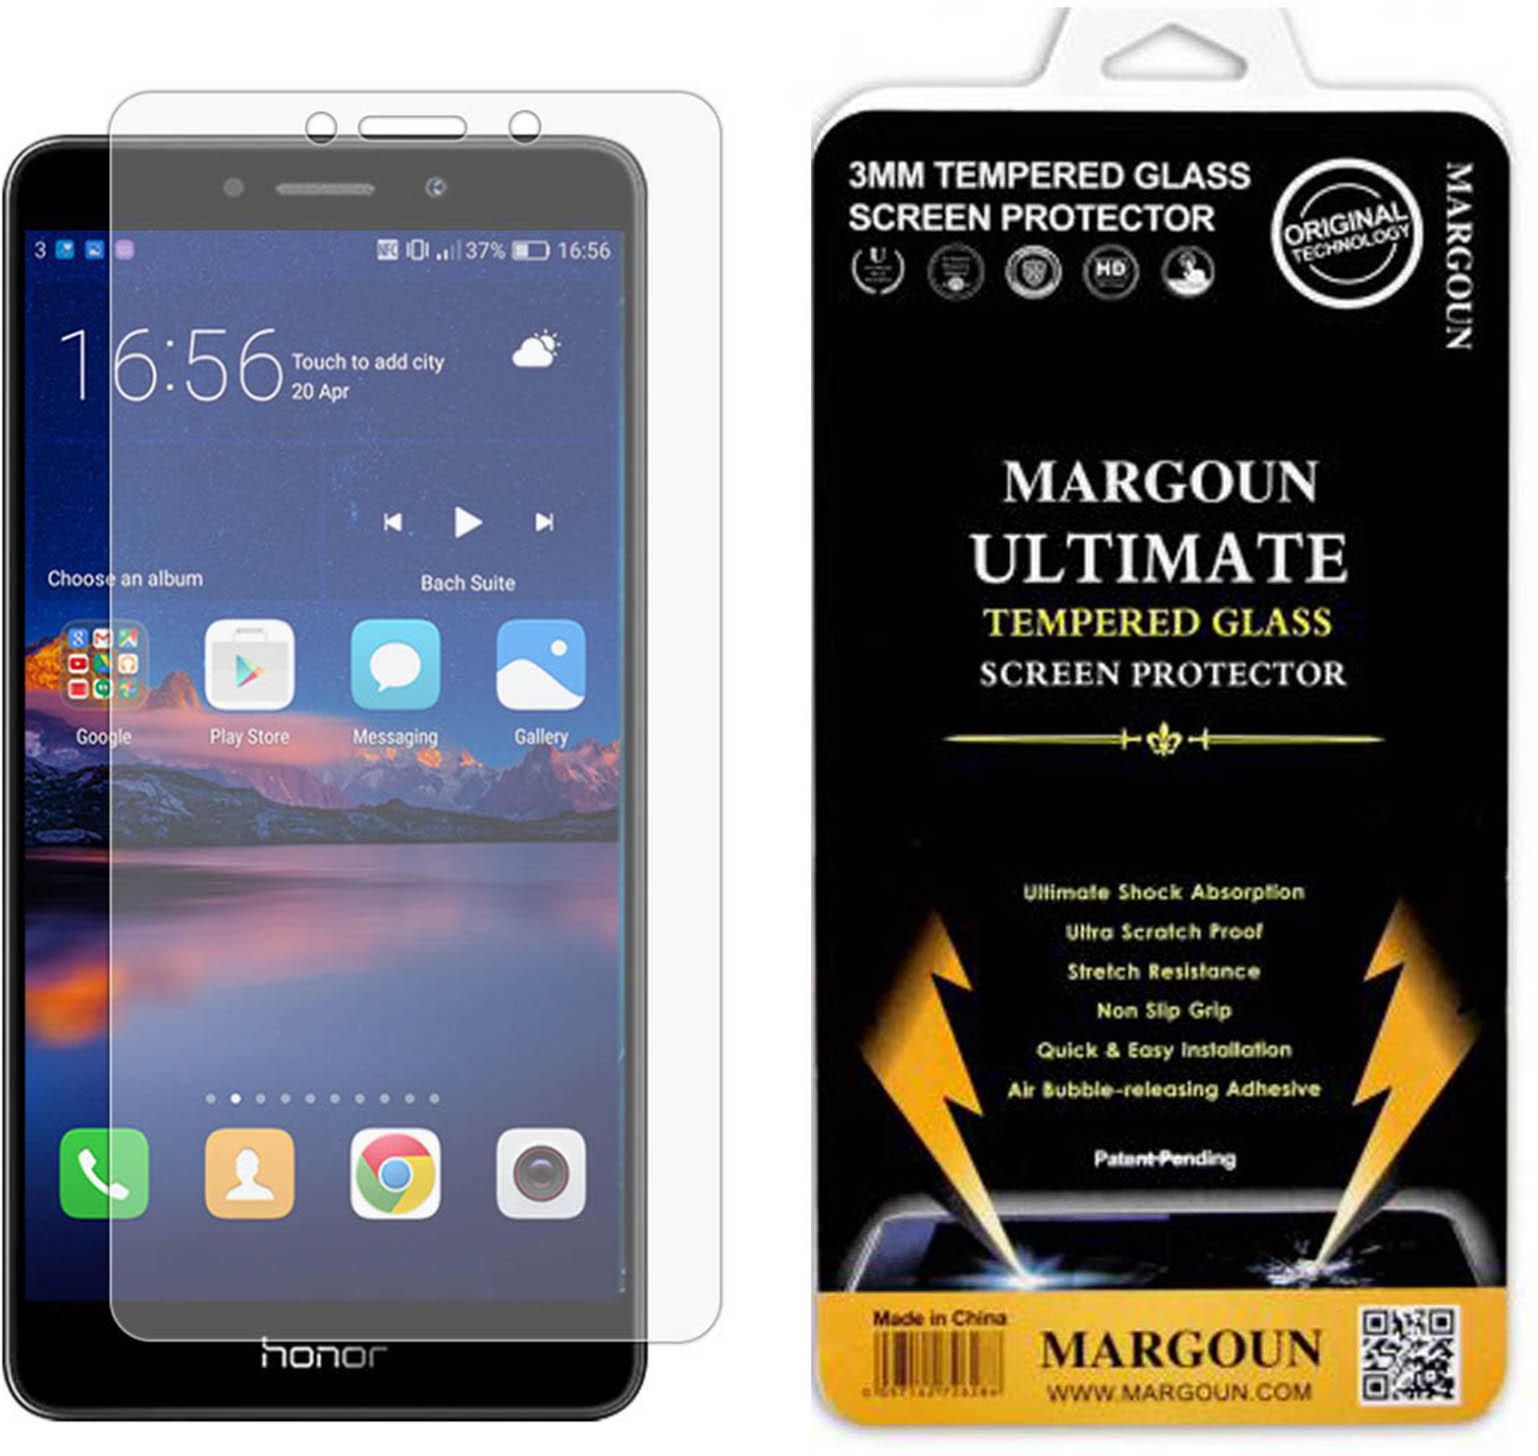 Margoun Tempered Glass Screen Protector for Huawei Honor 6X / Huawei Mate 9 Lite, Huawei GR5 2017